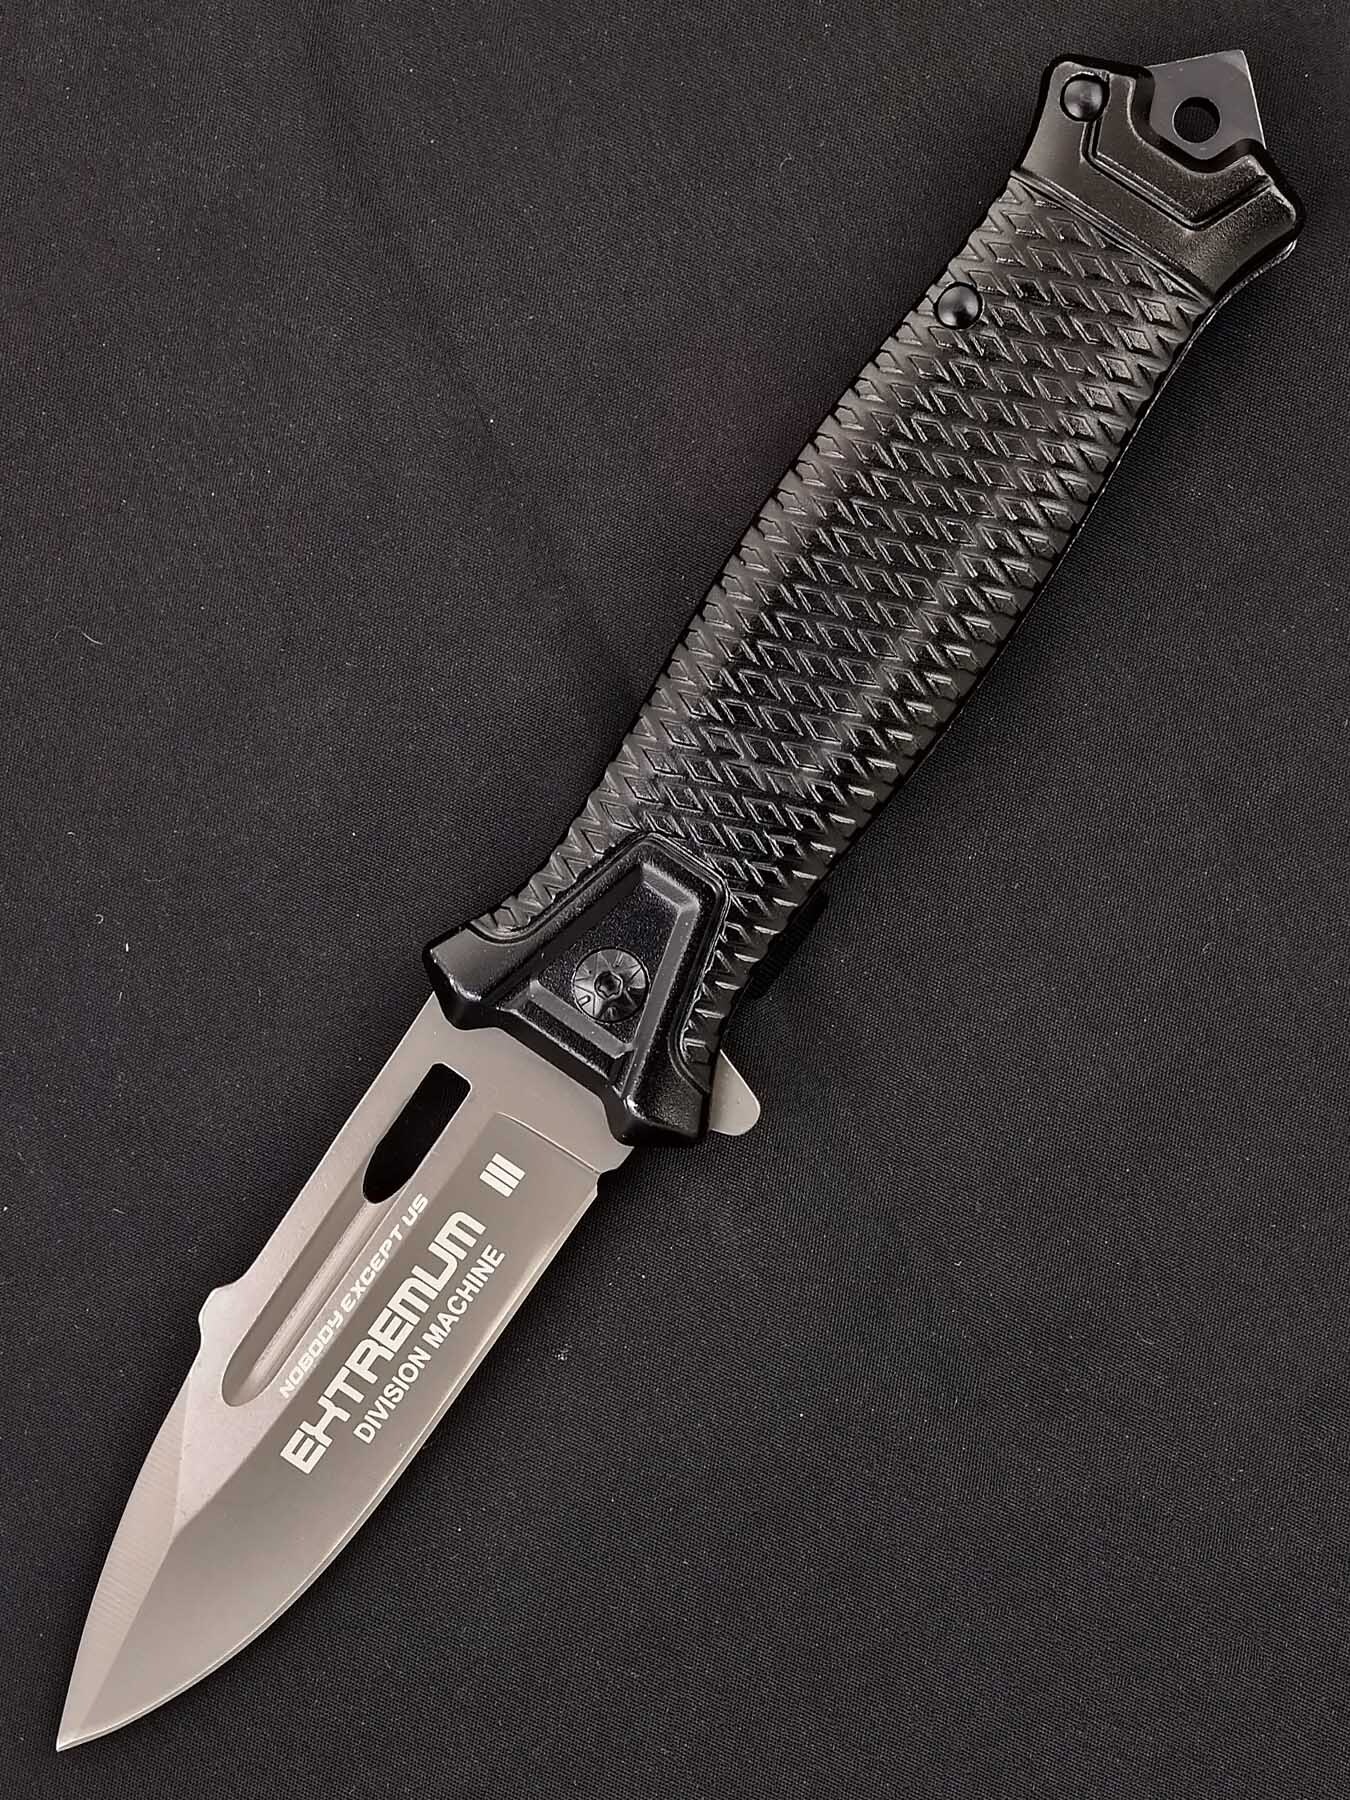 Ножи расклад. Нож SRM 1168 цена.